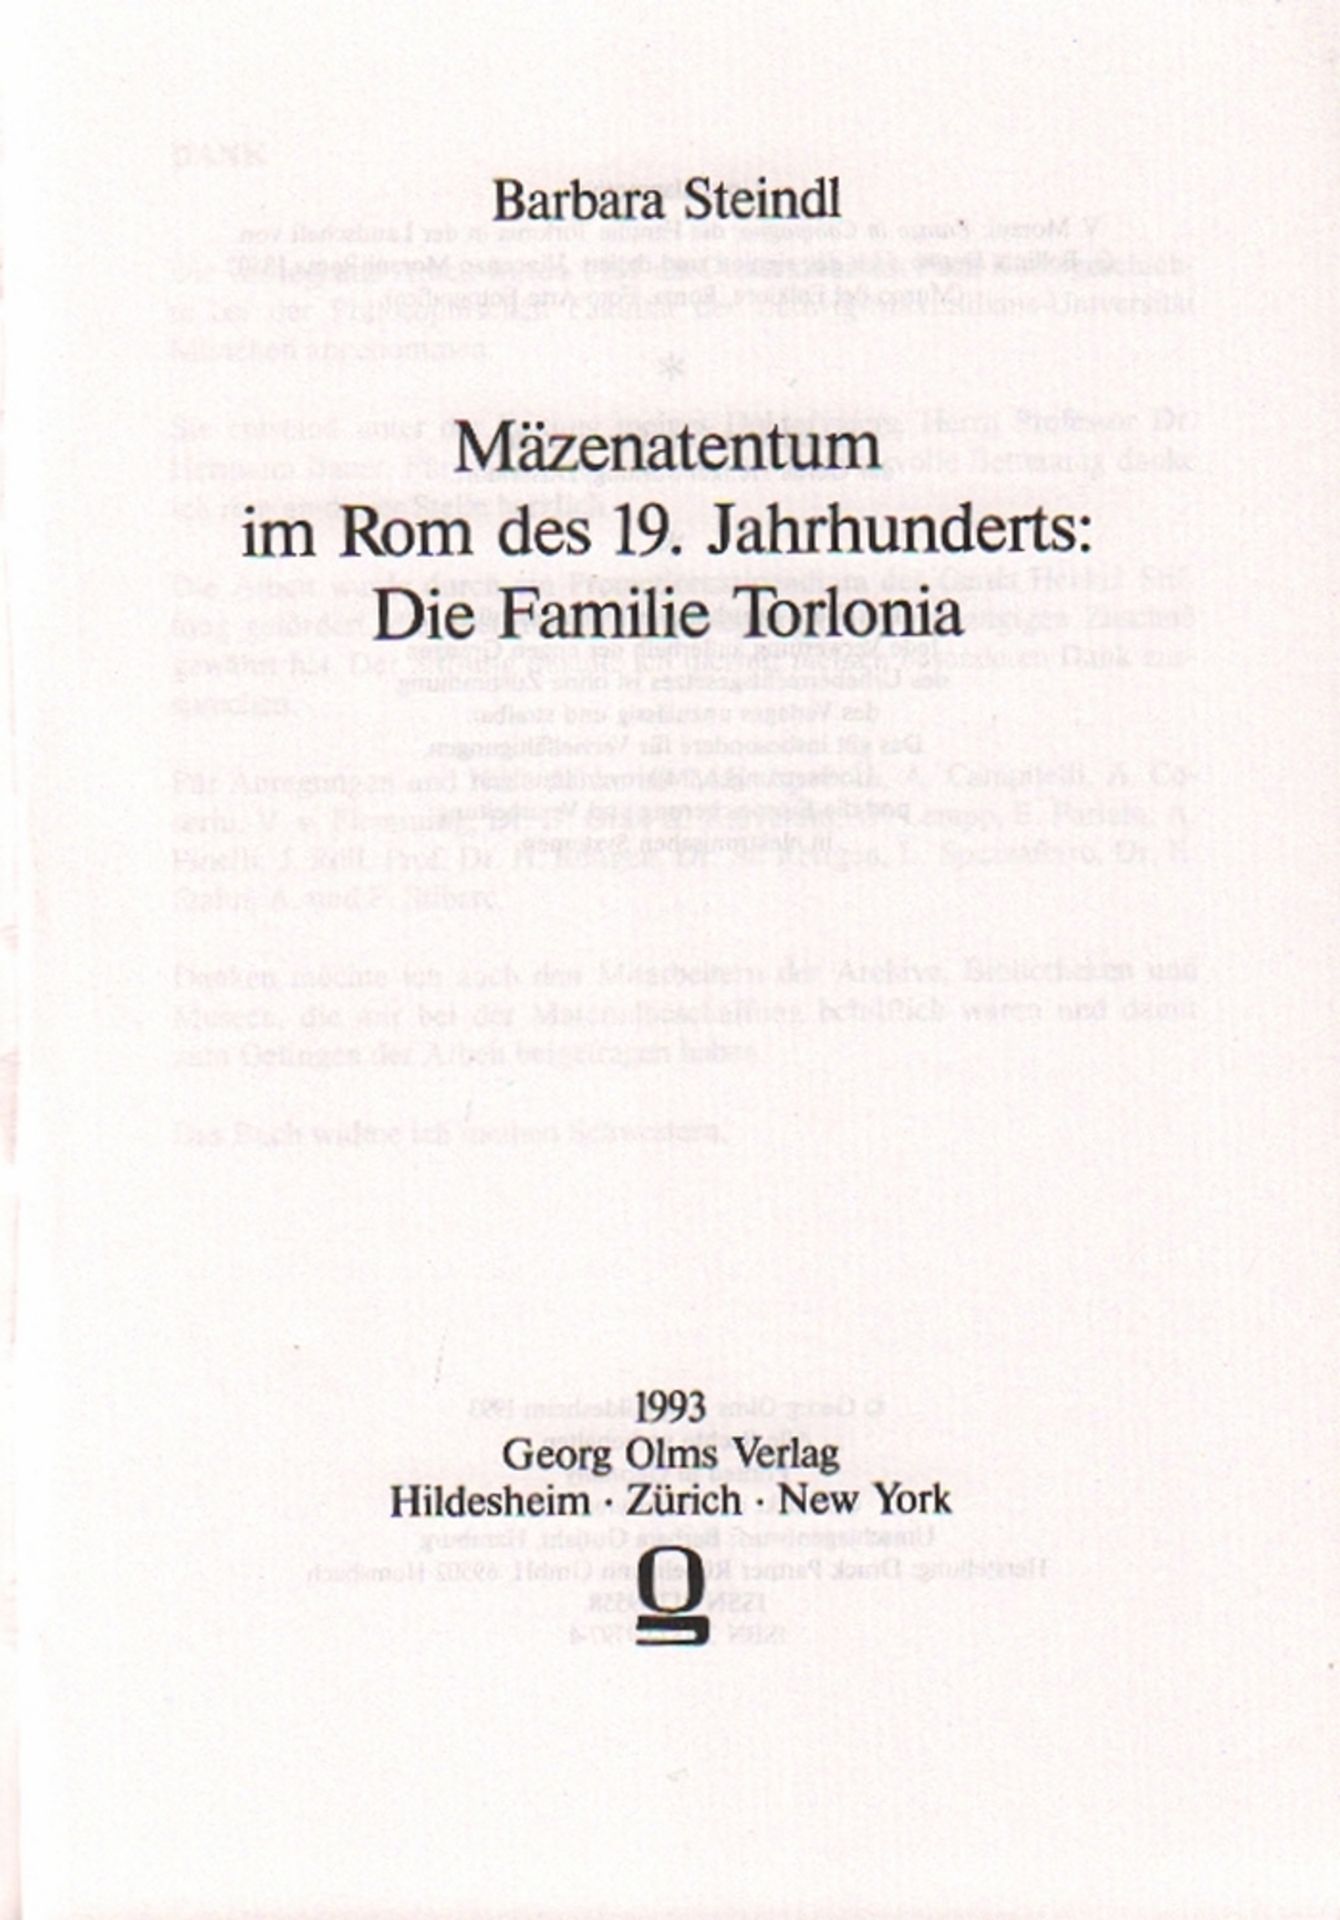 Kunst. Steindl, Barbara. Mäzenatentum im Rom des 19. Jahrhunderts. Die Familie Torlonia. Hildesheim,